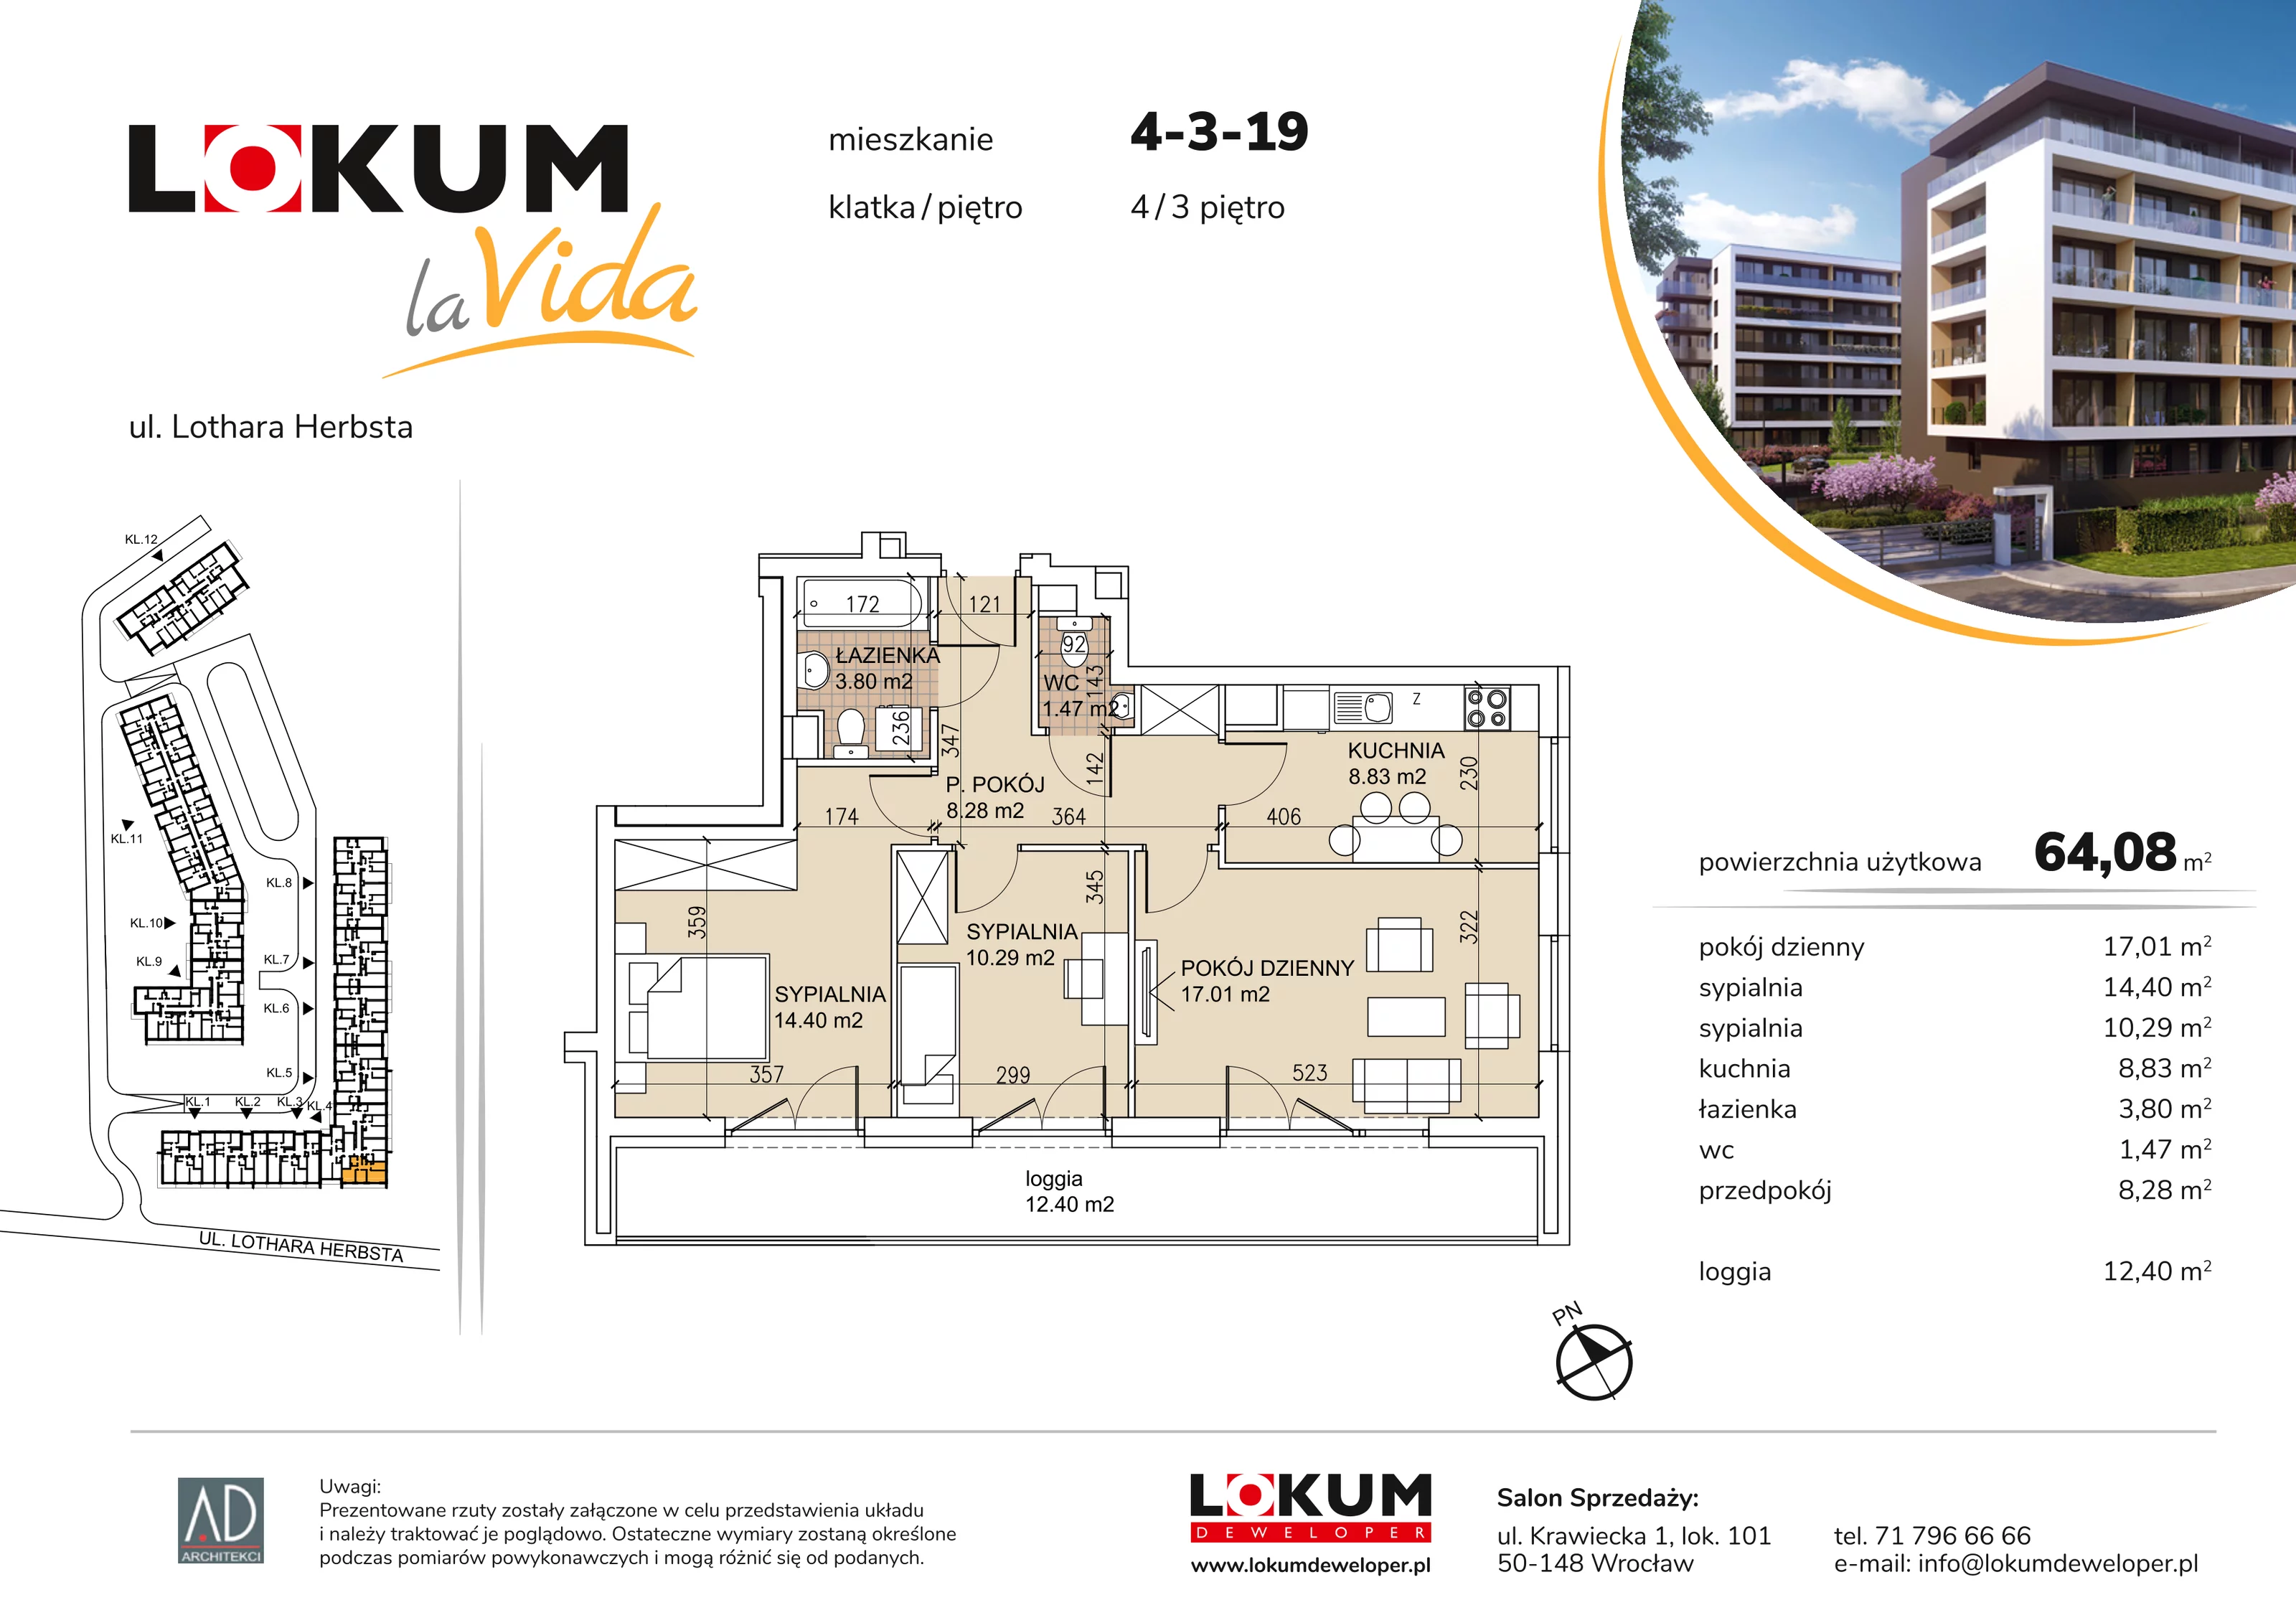 Mieszkanie 64,08 m², piętro 3, oferta nr 4-3-19, Lokum la Vida, Wrocław, Sołtysowice, ul. Lothara Herbsta